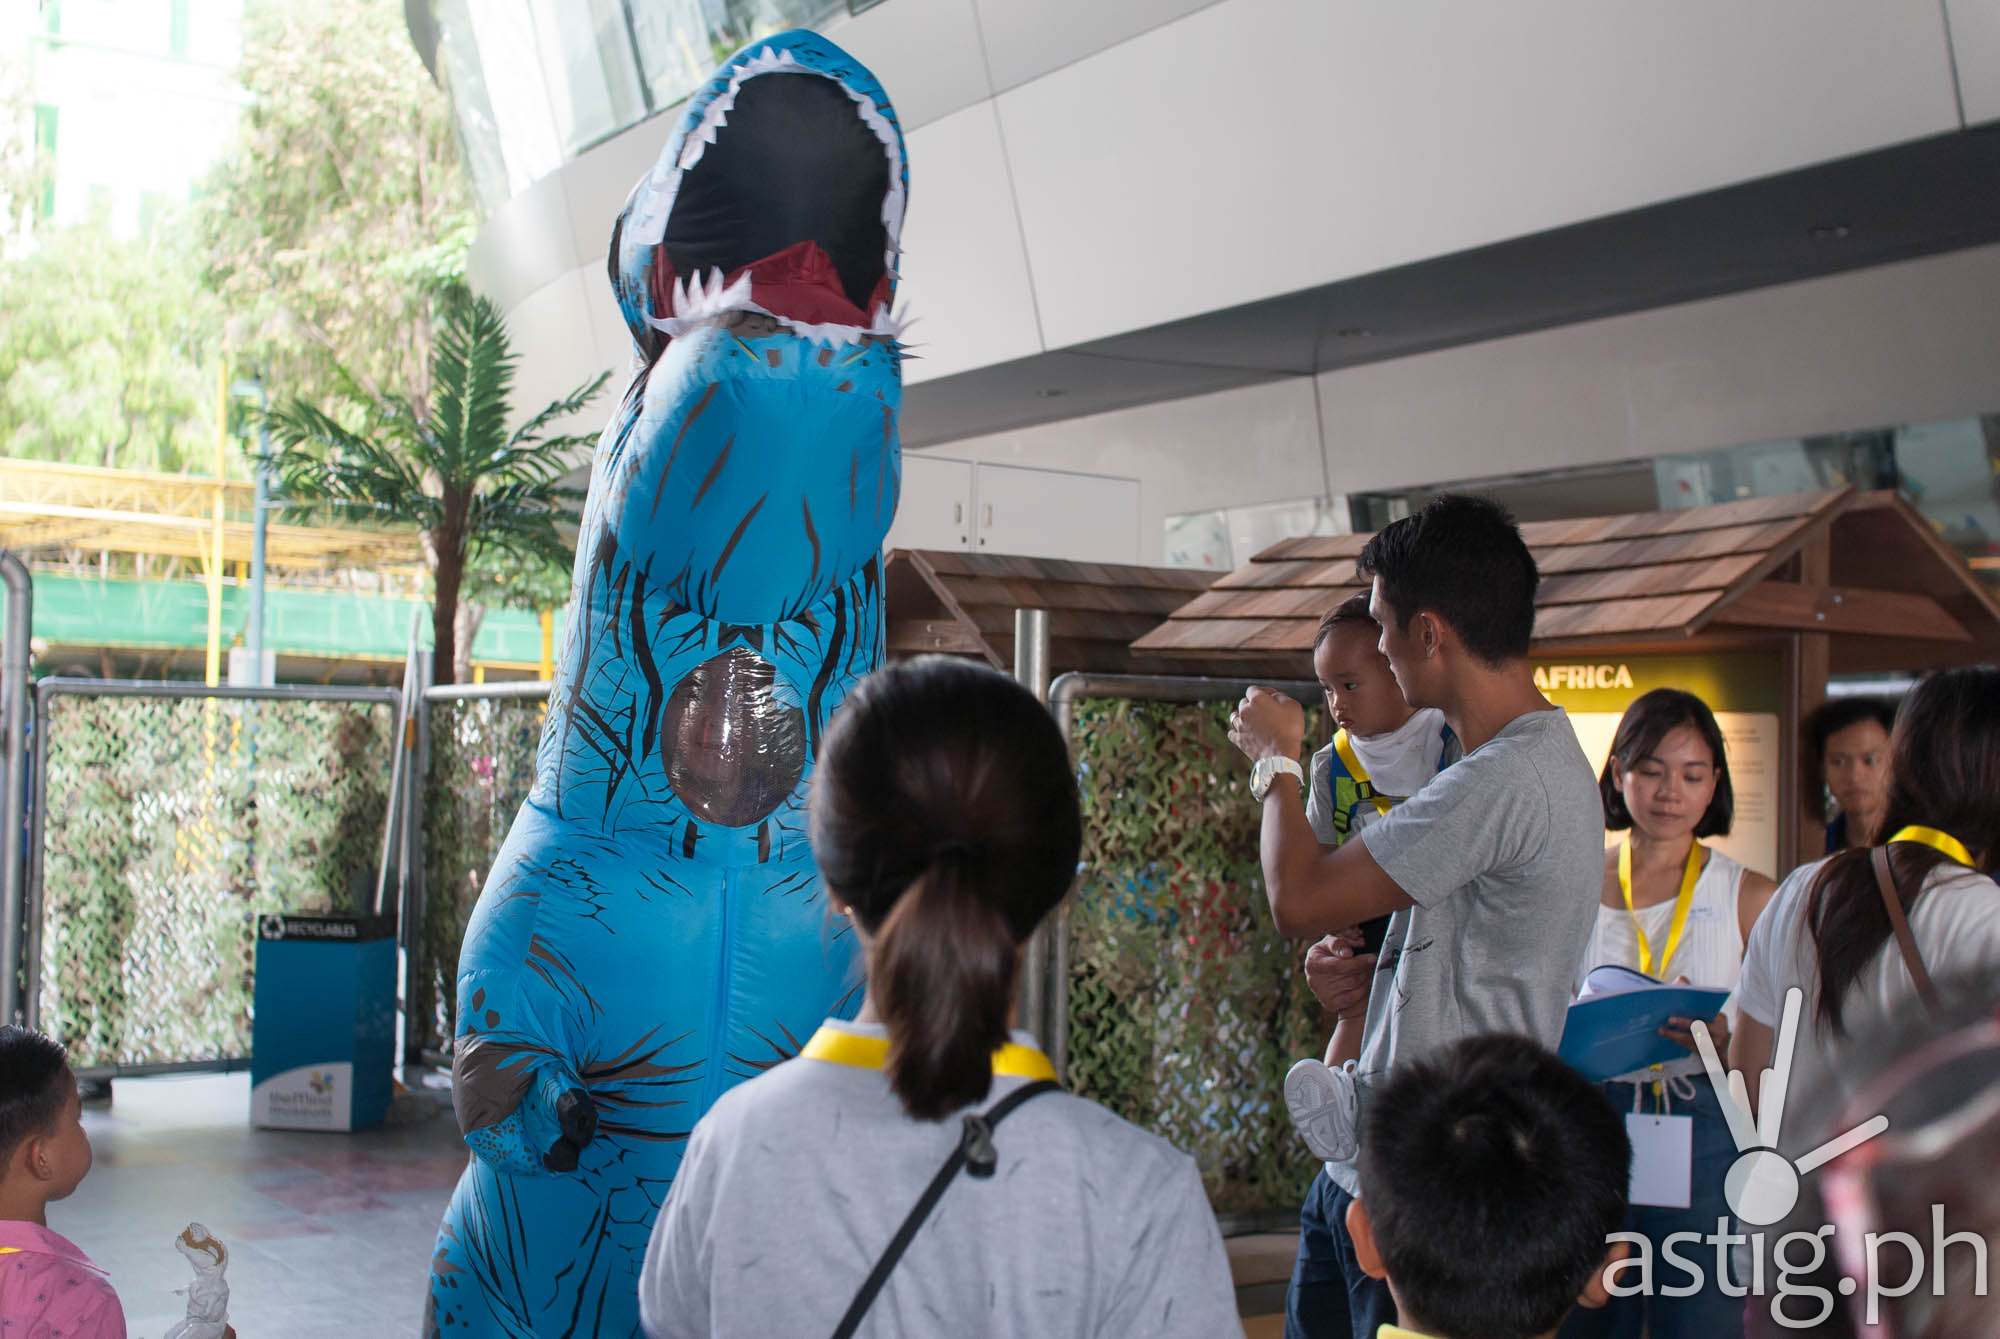 Dinosaur mascot - Dinosaurs Around The World exhibit - Mind Museum BGC